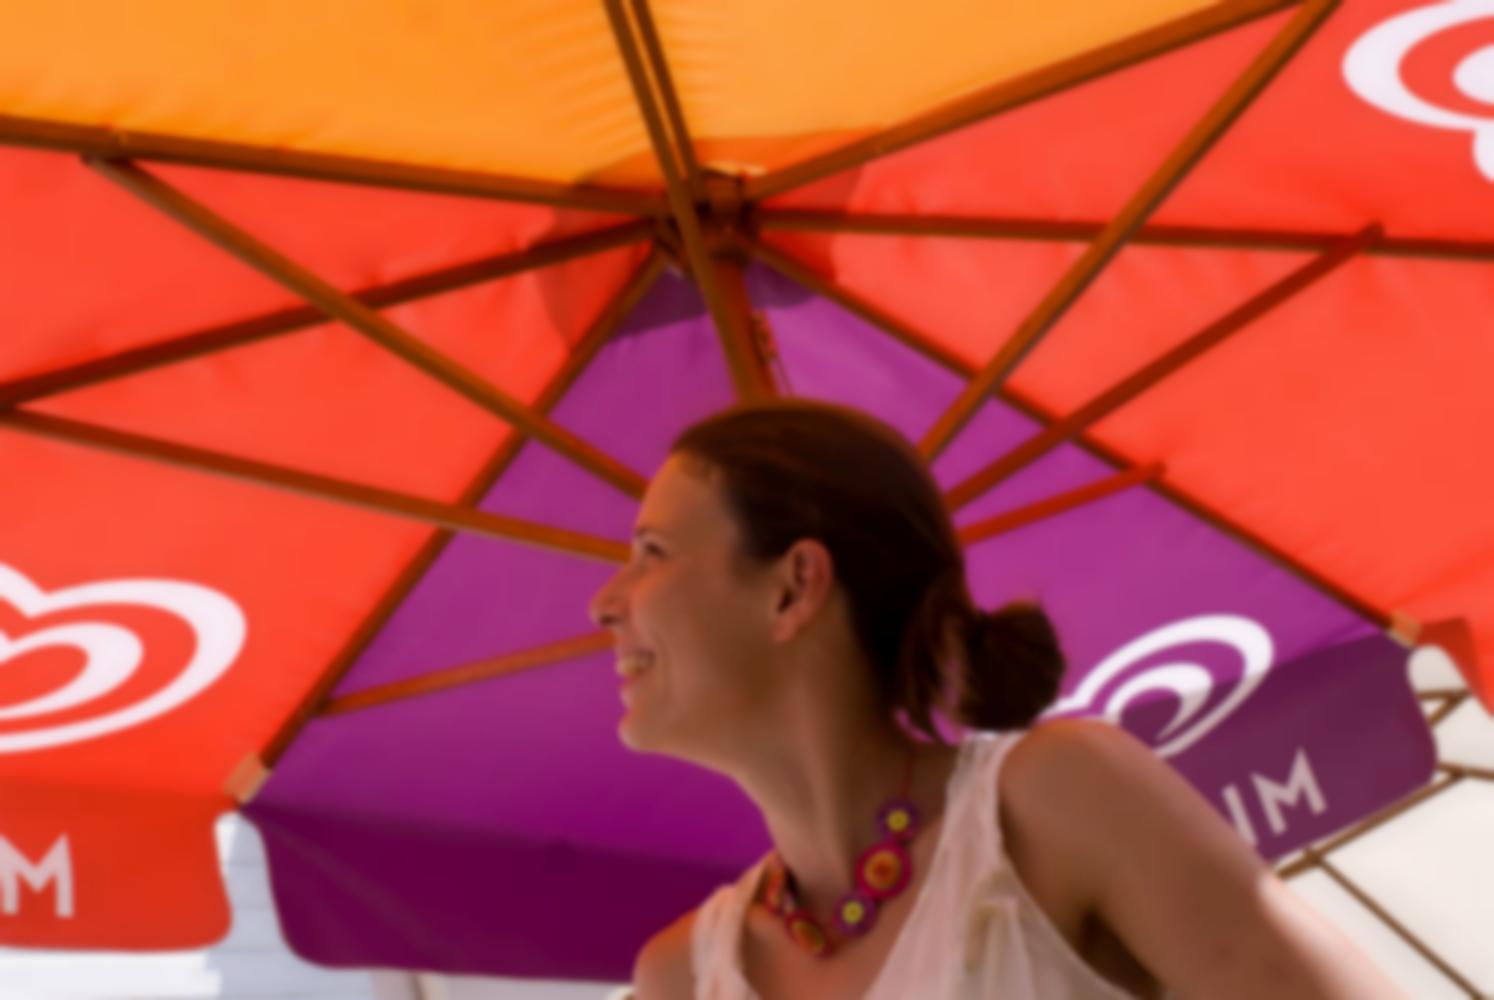 Solveig souriante sous un parasol mauve, rouge et orange. Arradon, août 2009.